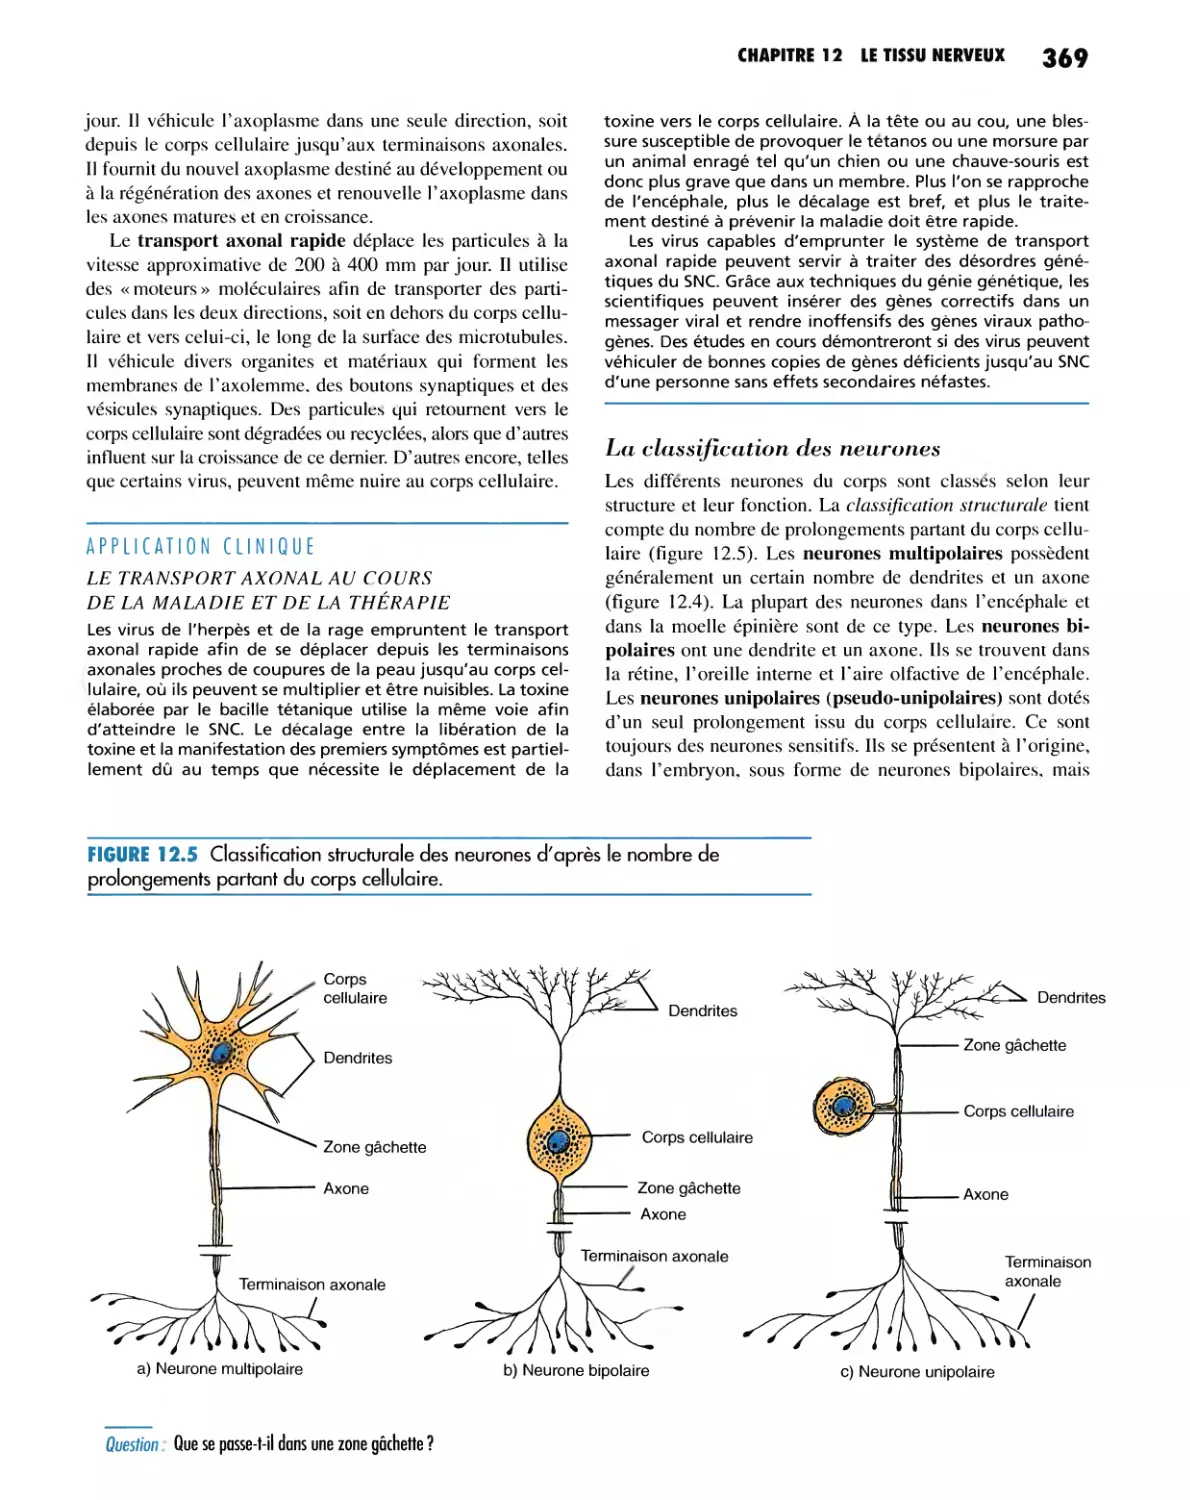 La classification des neurones